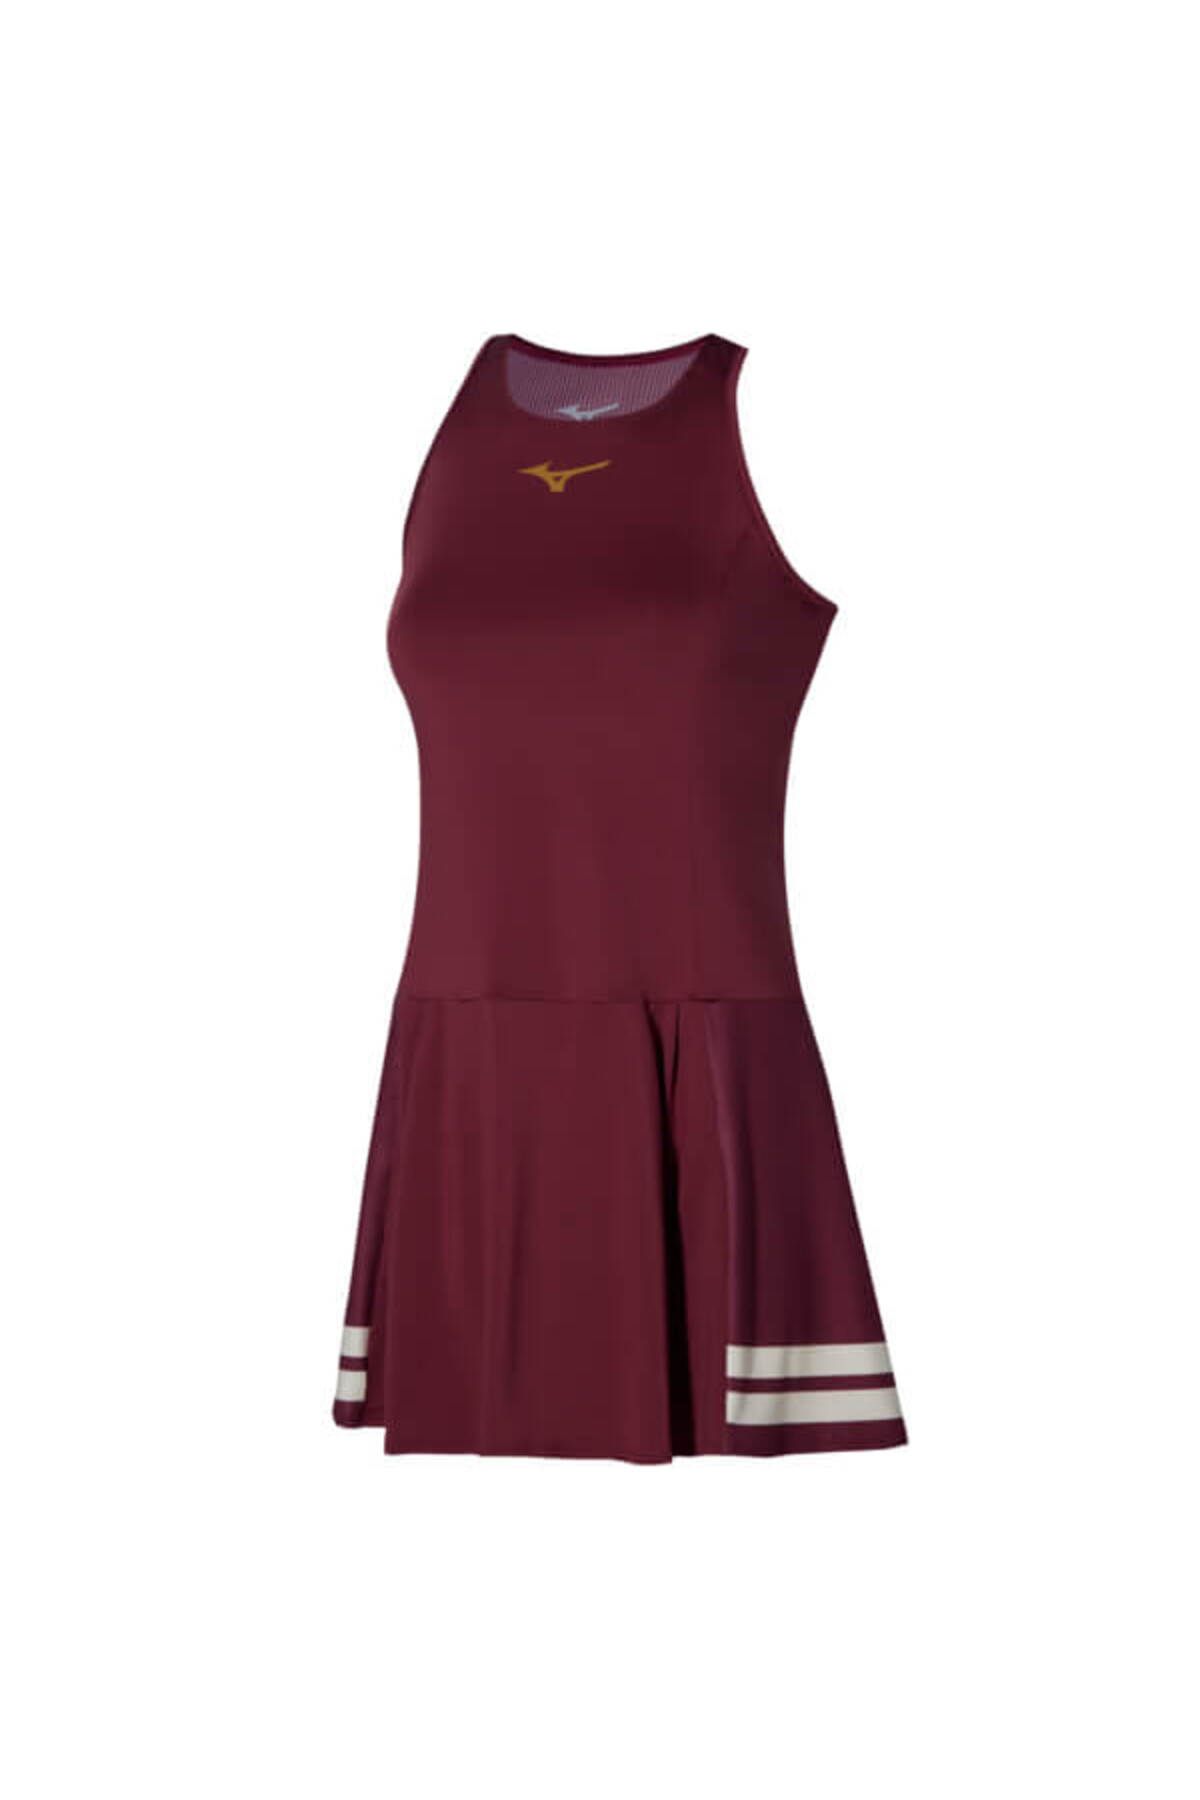 Mizuno Printed Dress Kadın Tenis Elbisesi Bordo